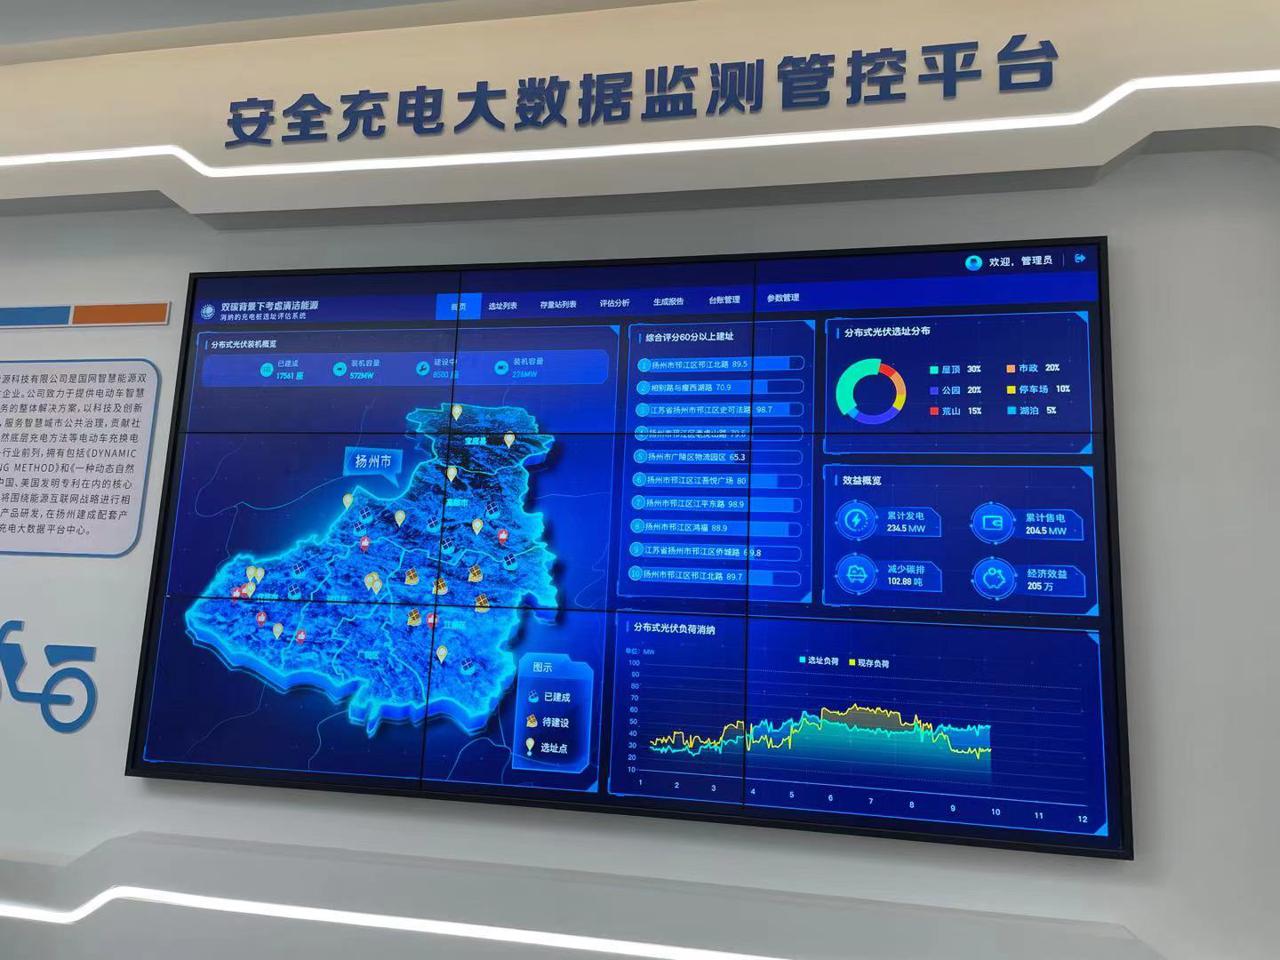 扬州市生态科技新城上海创新中心正式启用